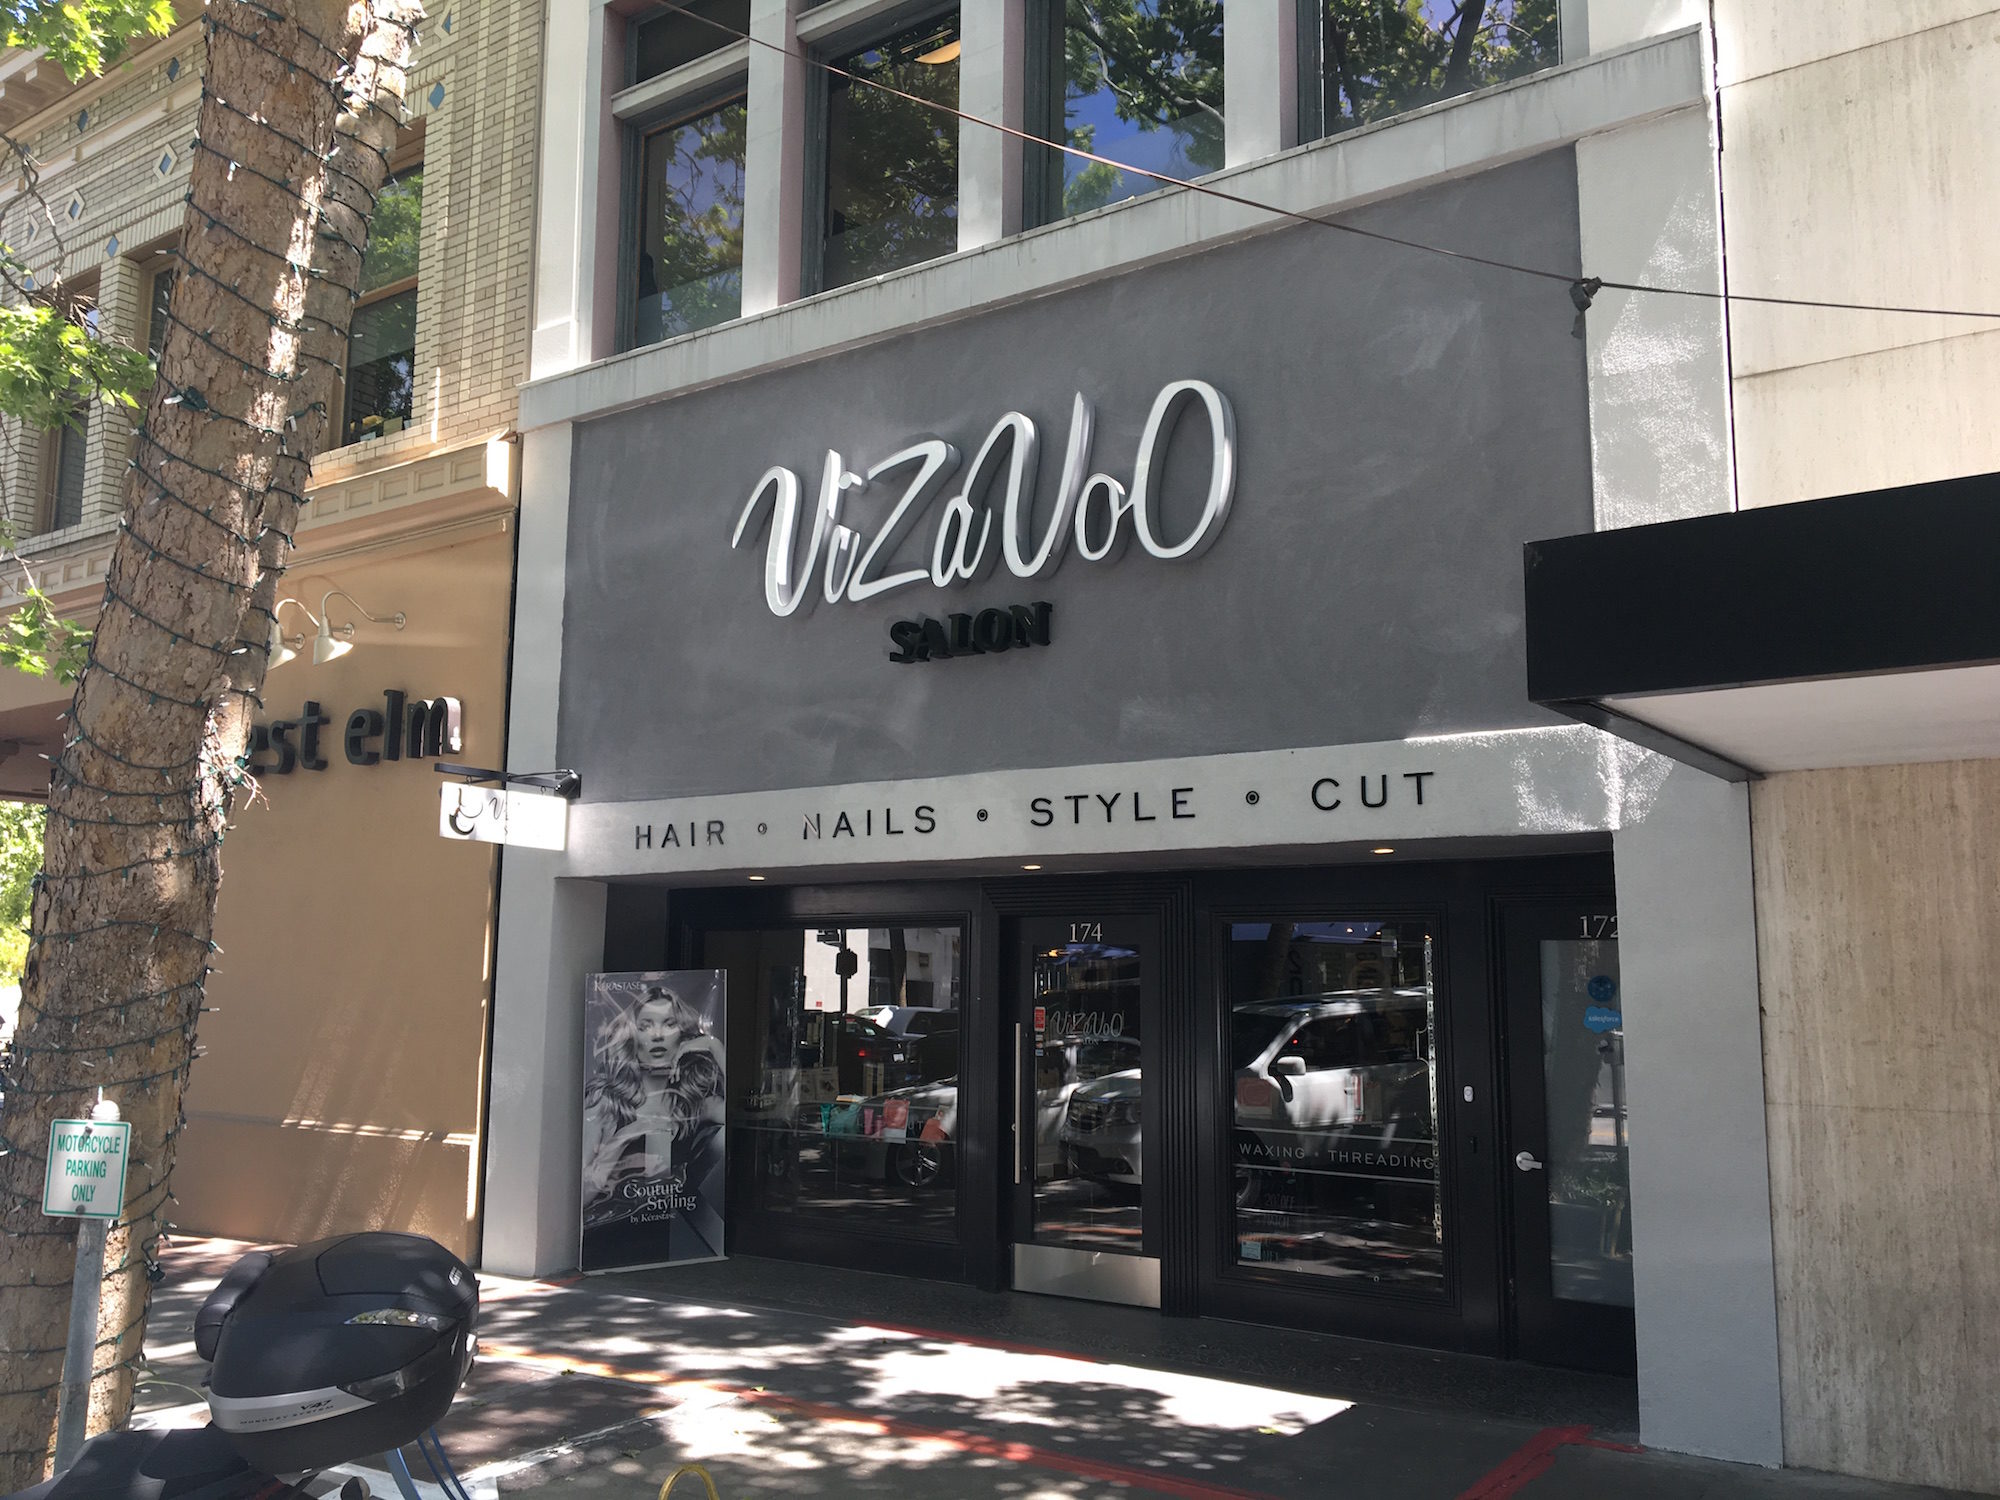 VizaVoo Salon – Palo Alto, CA